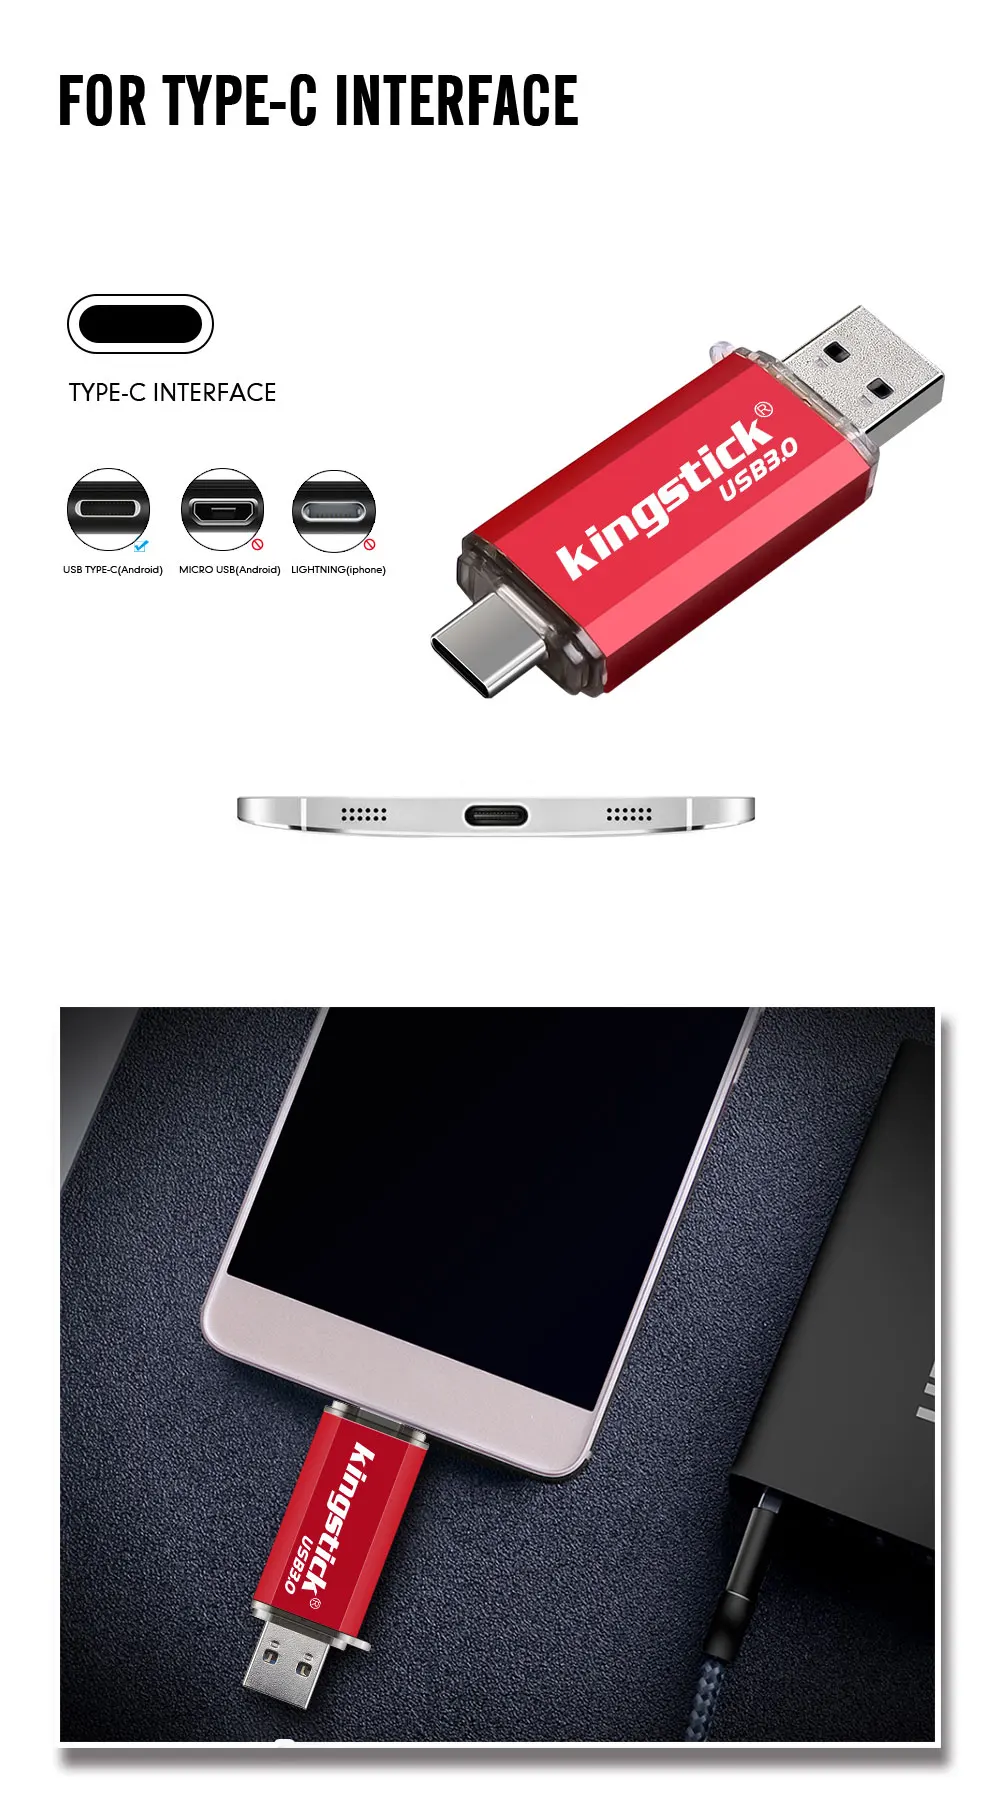 Флеш-накопитель OTG USB 3,0, флеш-накопитель, 128 ГБ, Тип C, Micro Usb накопитель, 16 ГБ, 32 ГБ, 64 ГБ, флешка для устройства type-C